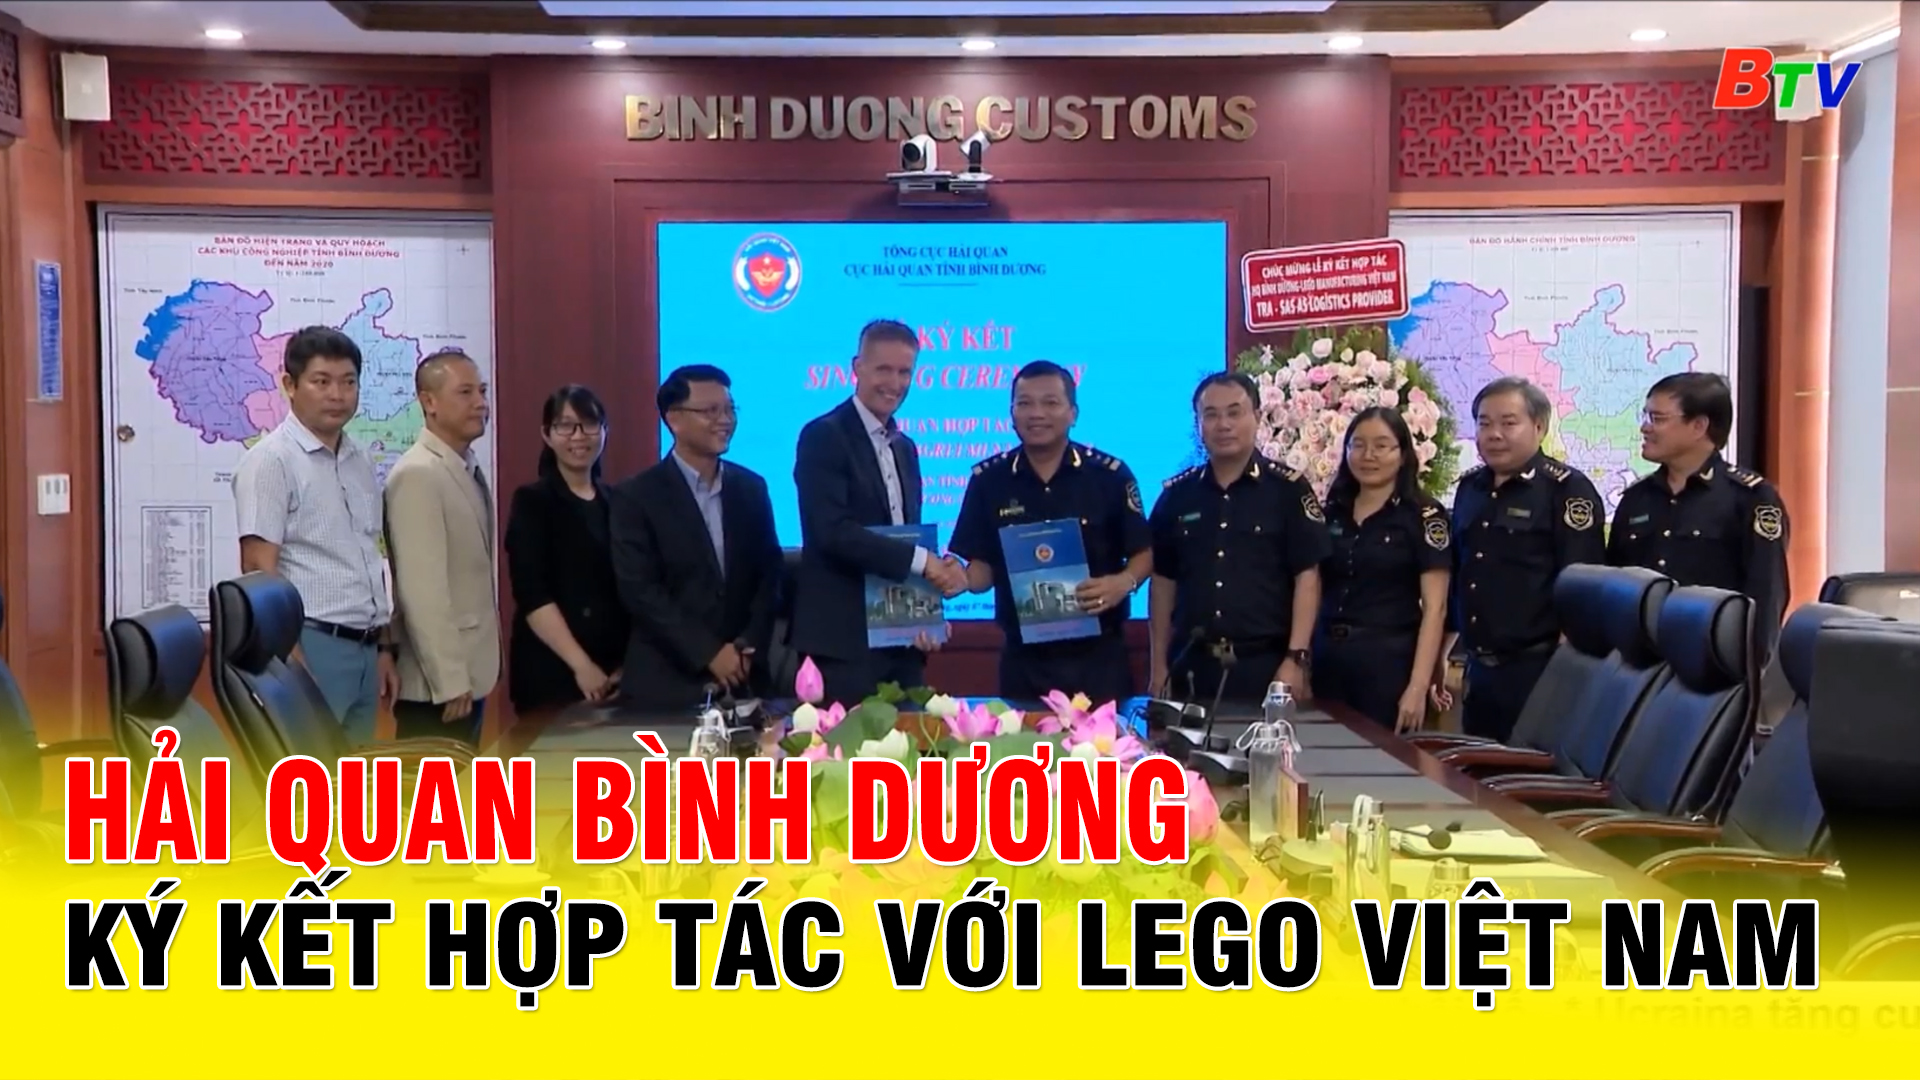 Hải quan Bình Dương ký kết hợp tác với LEGO Việt Nam